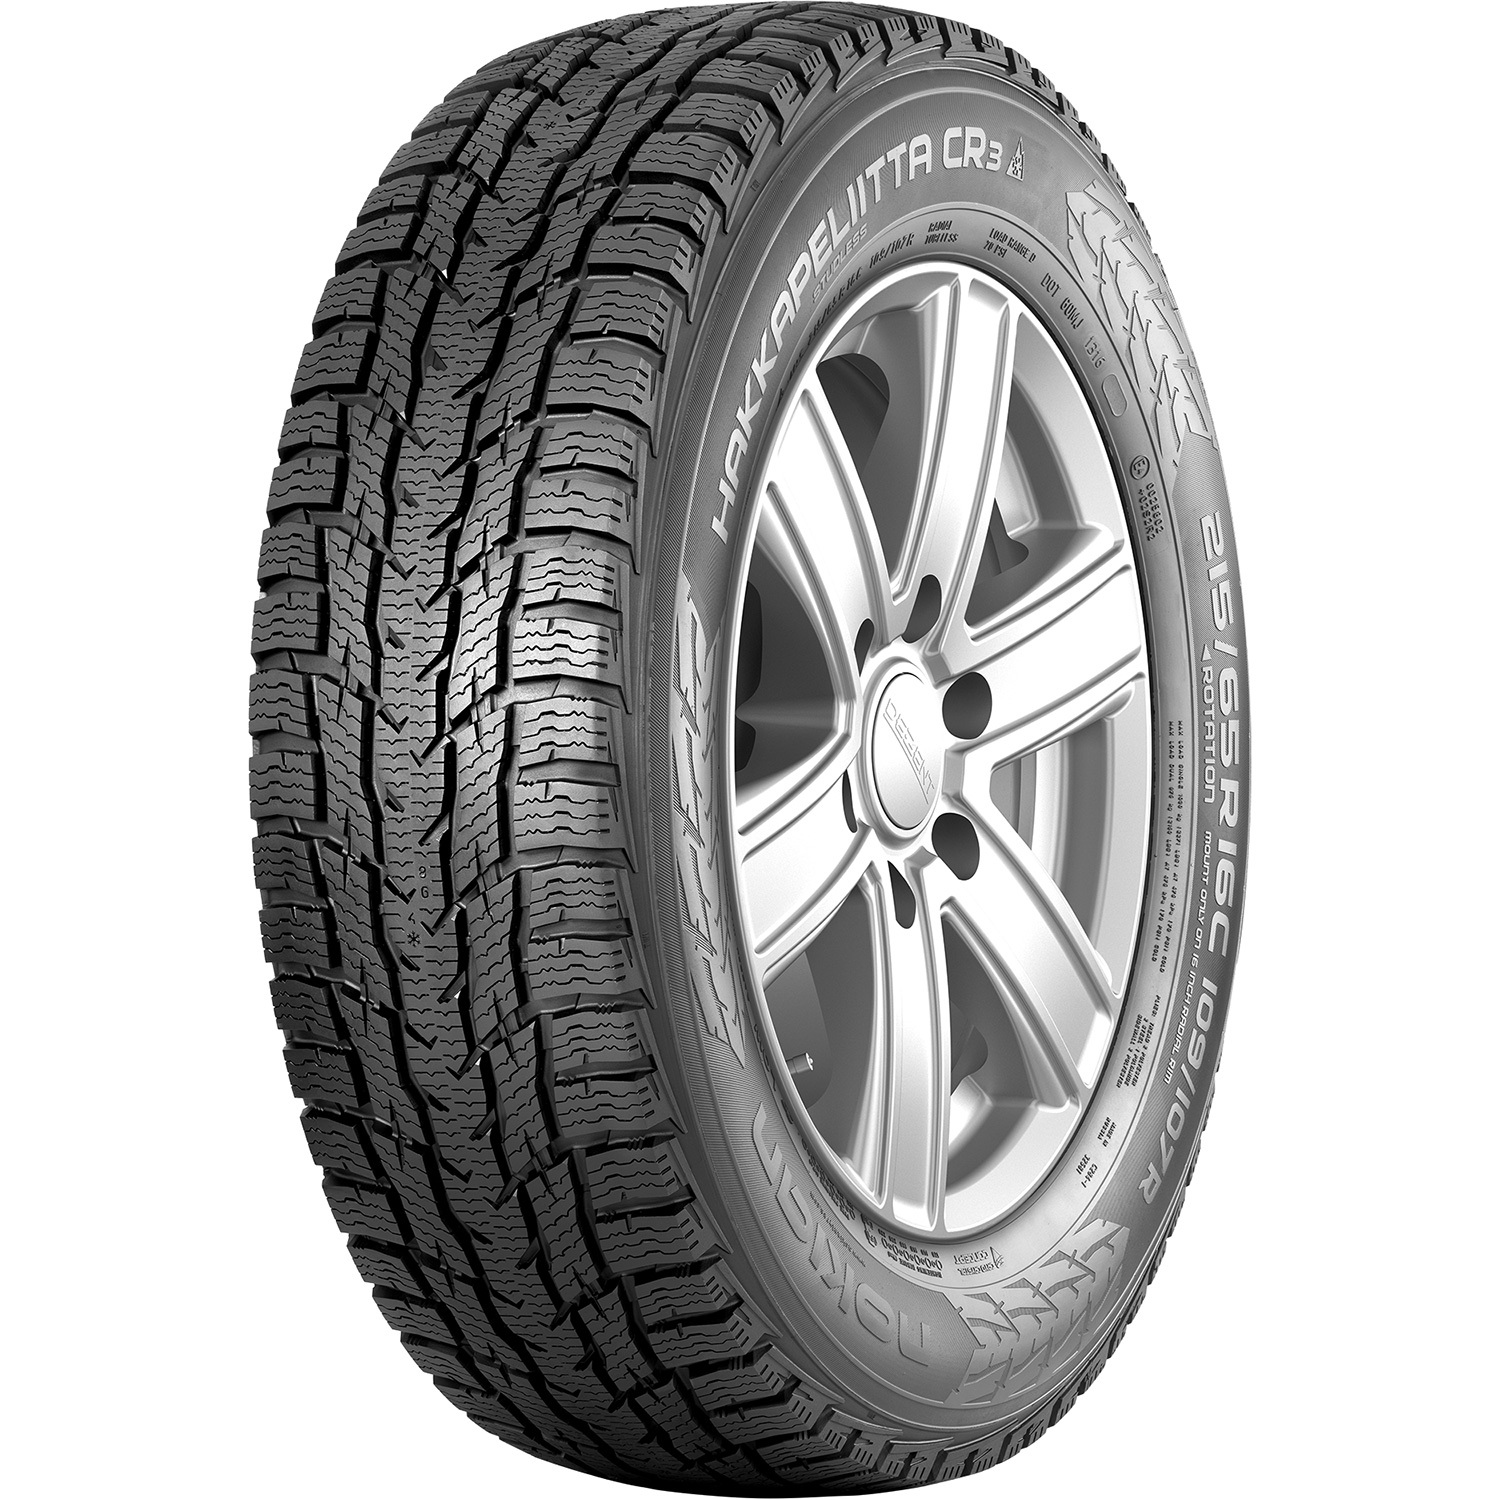 Автомобильная шина Nokian Tyres Hakkapeliitta CR3 205/65 R16C 107R Без шипов цена и фото